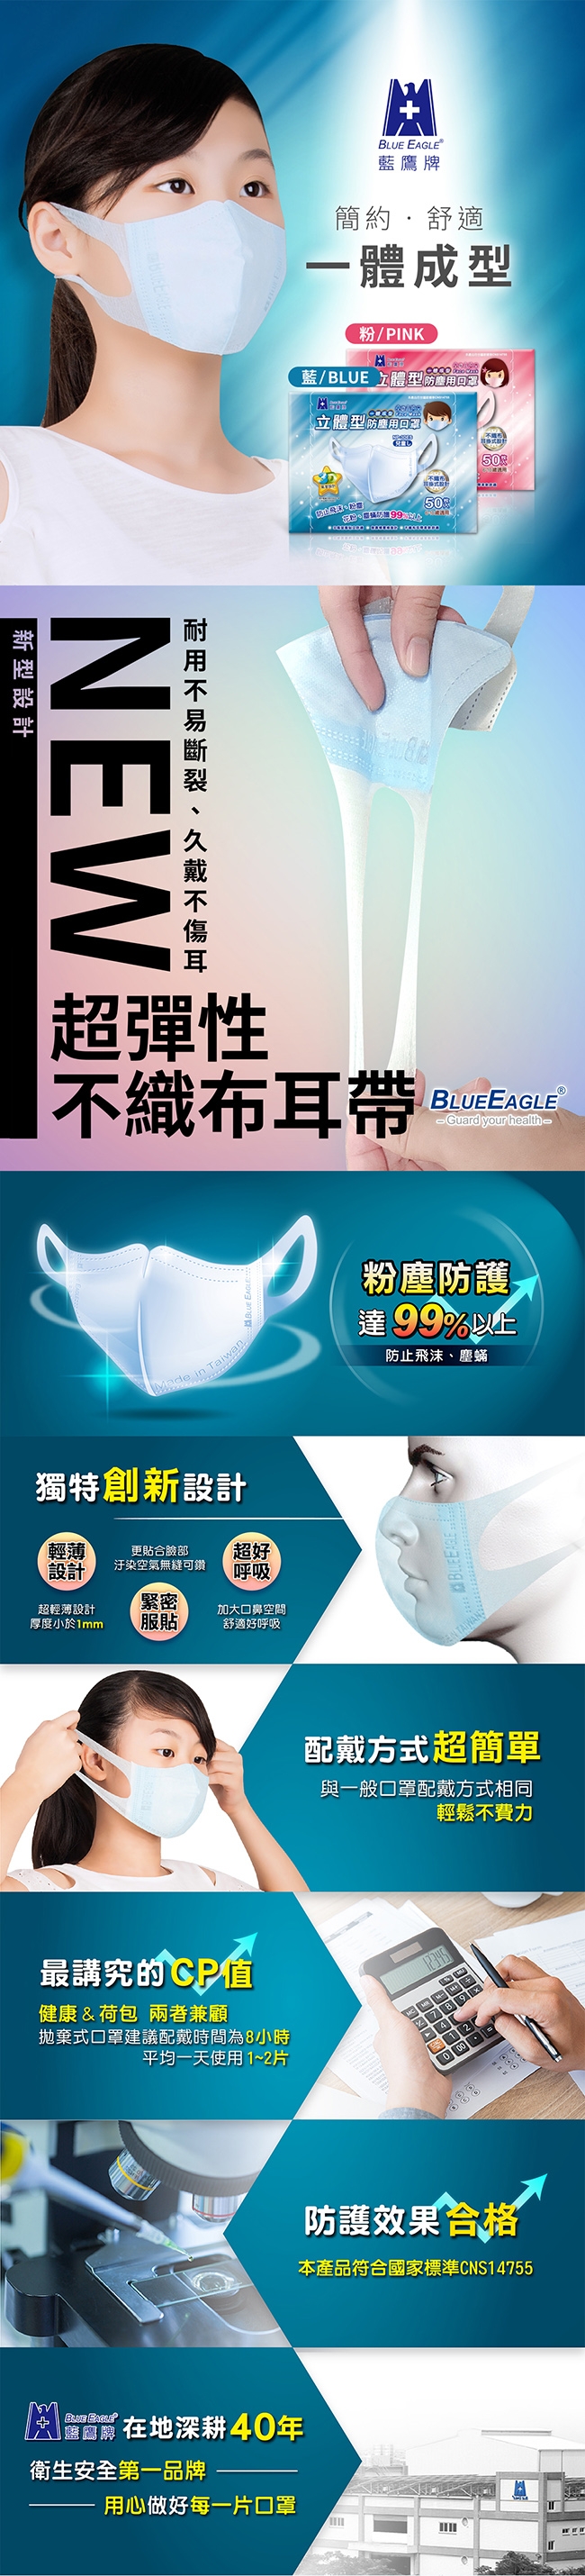 藍鷹牌 台灣製 3D兒童一體成型防塵口罩(6~10歲)-50入/盒